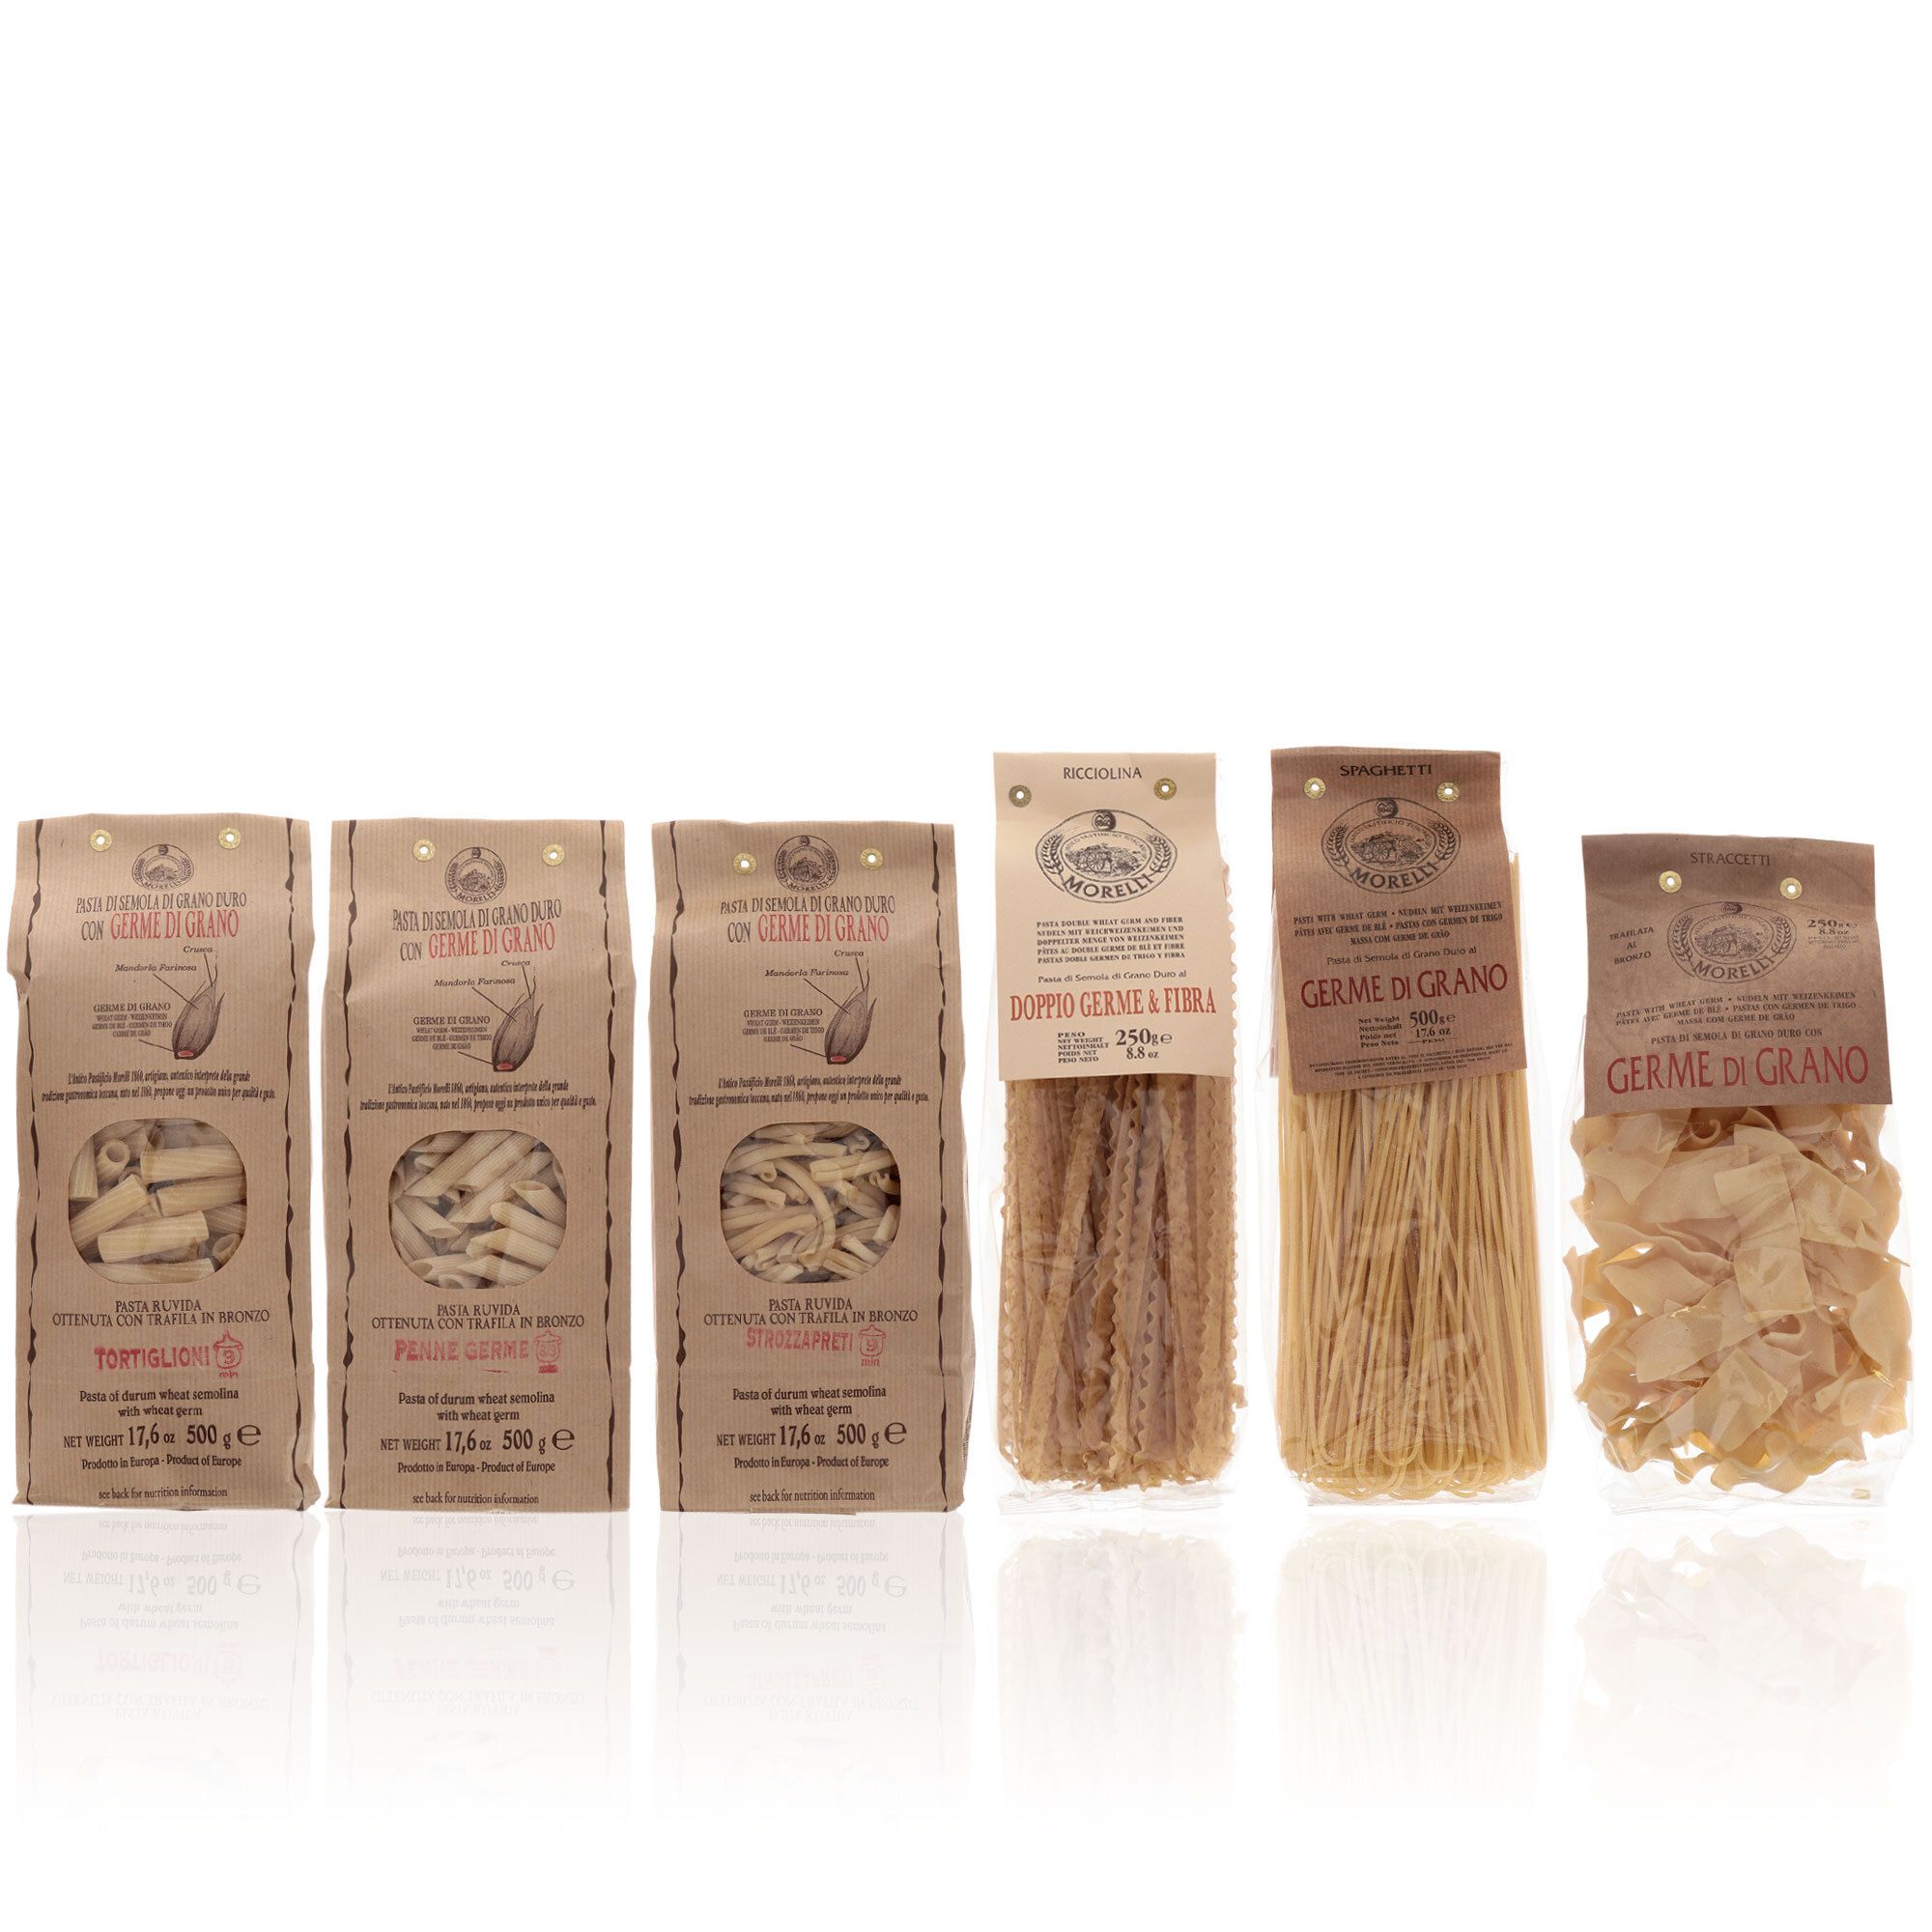 Image of 6 confezioni pasta al germe di grano